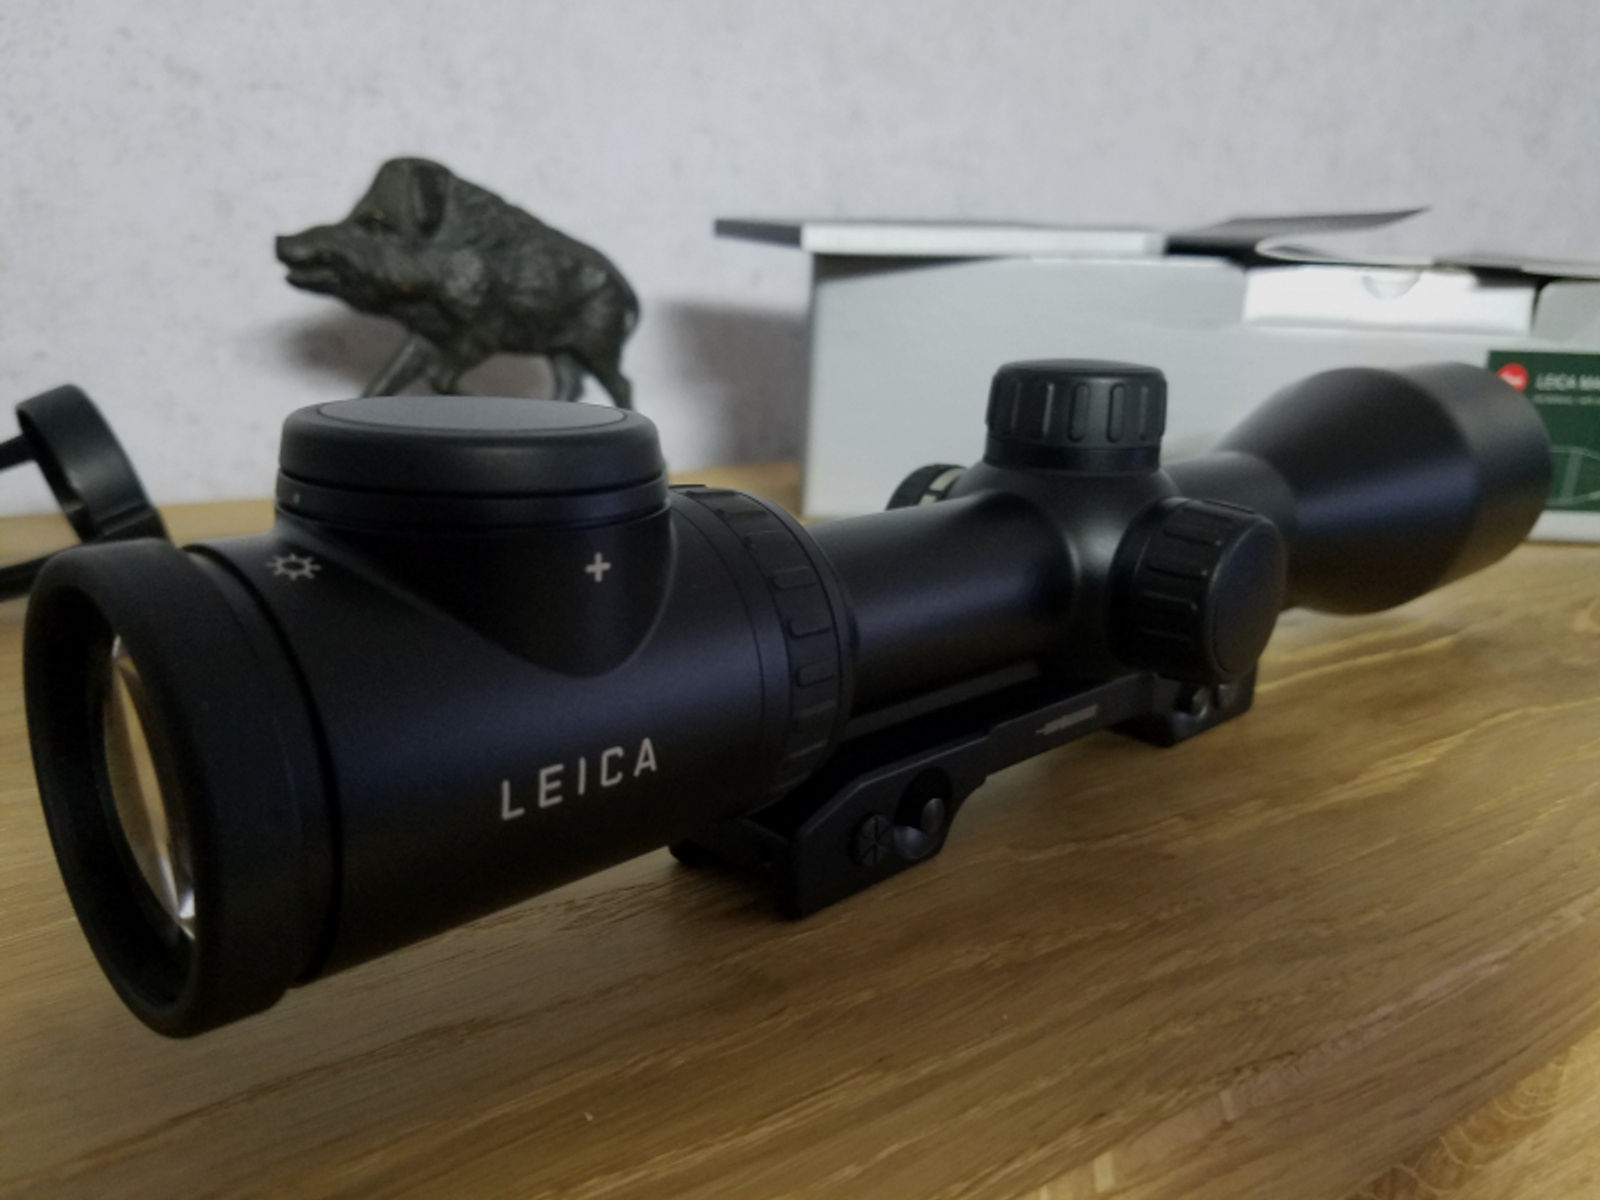 Leica Magnus 2,4-16x56i inklusive Innomount-Montage